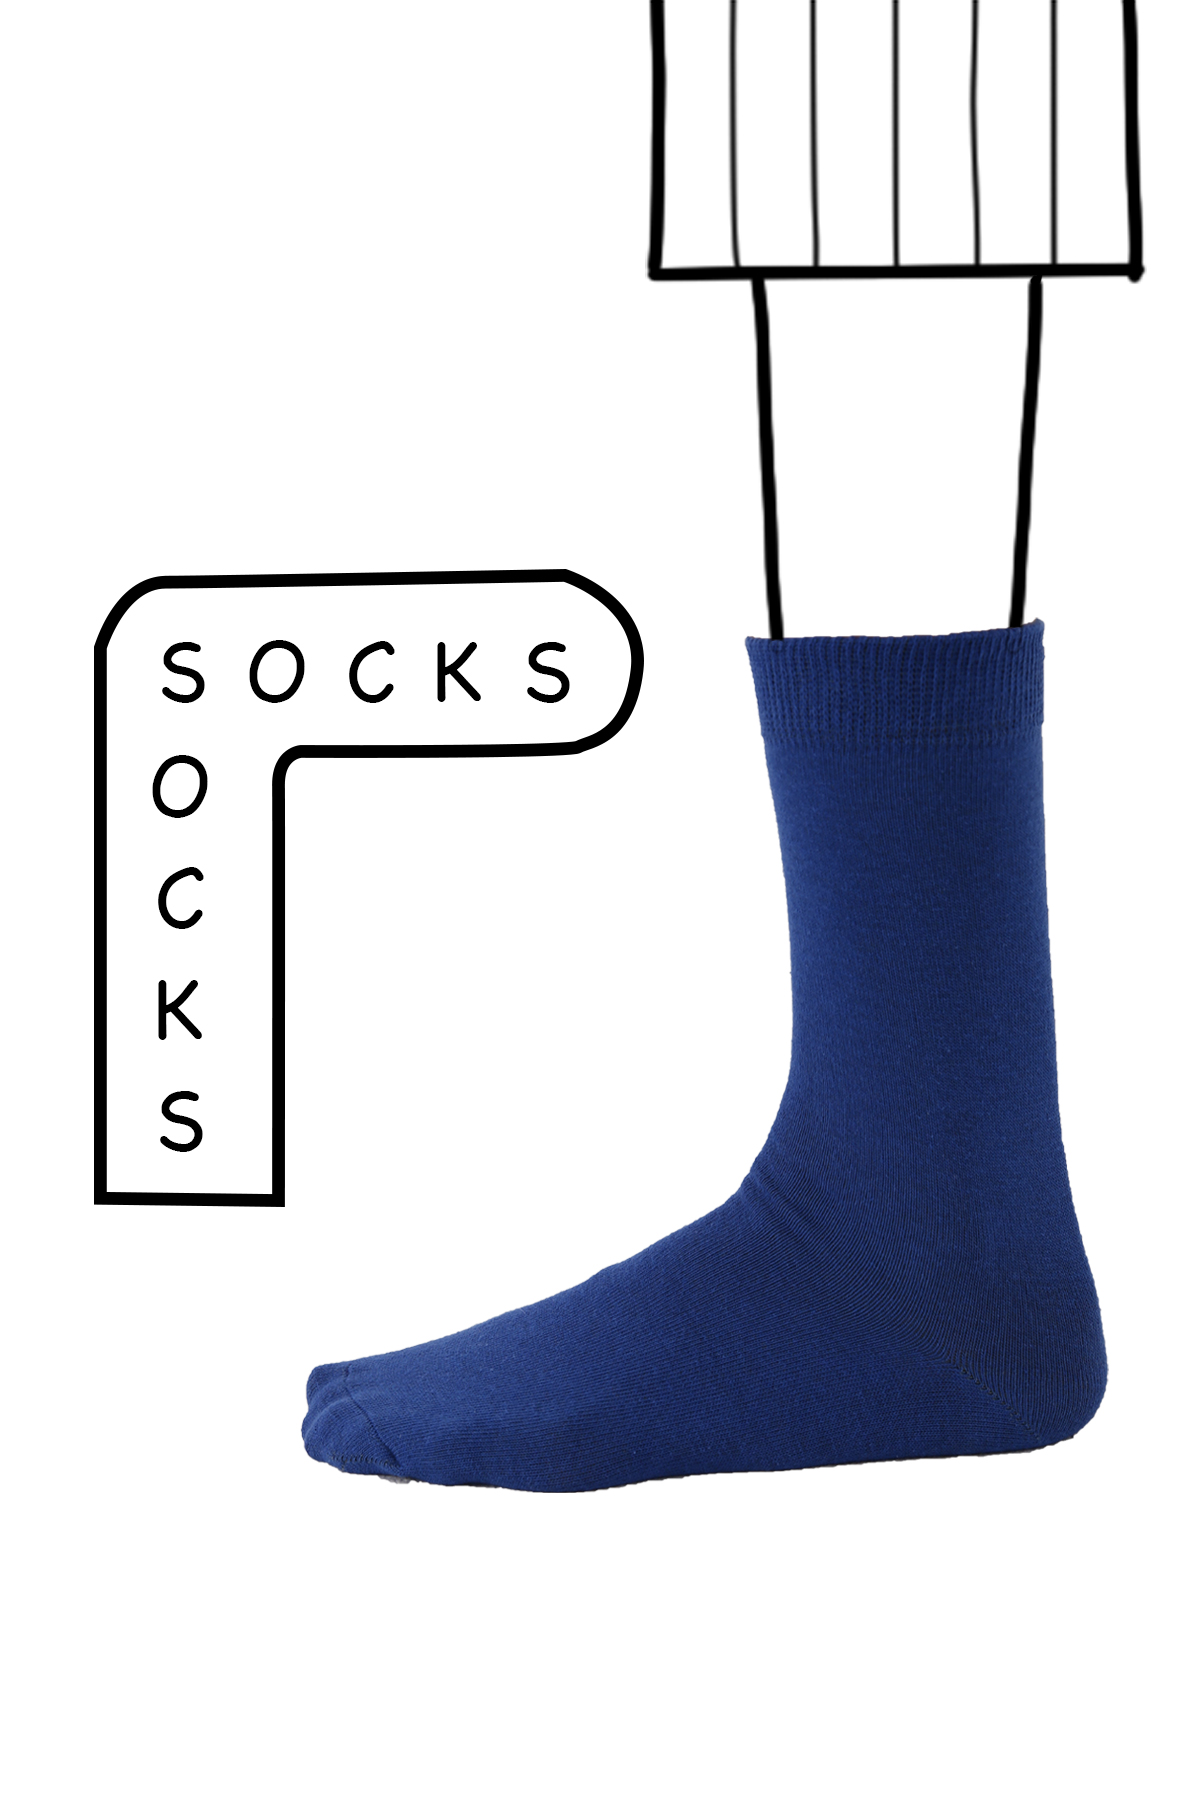 Socket Socks